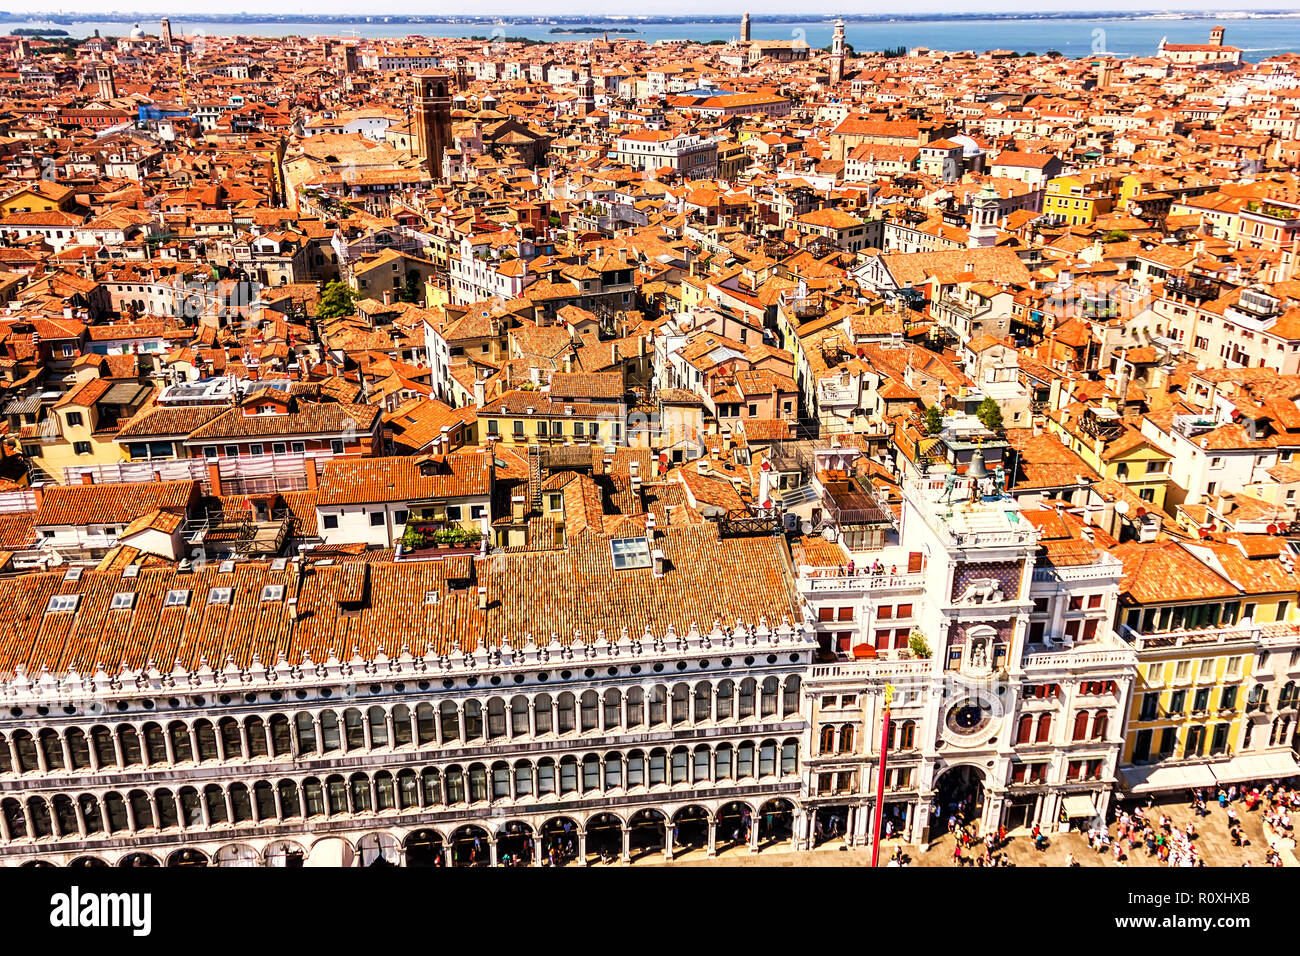 Biblioteca Nacional de San Marcos y San Marcos Clocktower en Venecia, vista desde la cima del Campanile Foto de stock